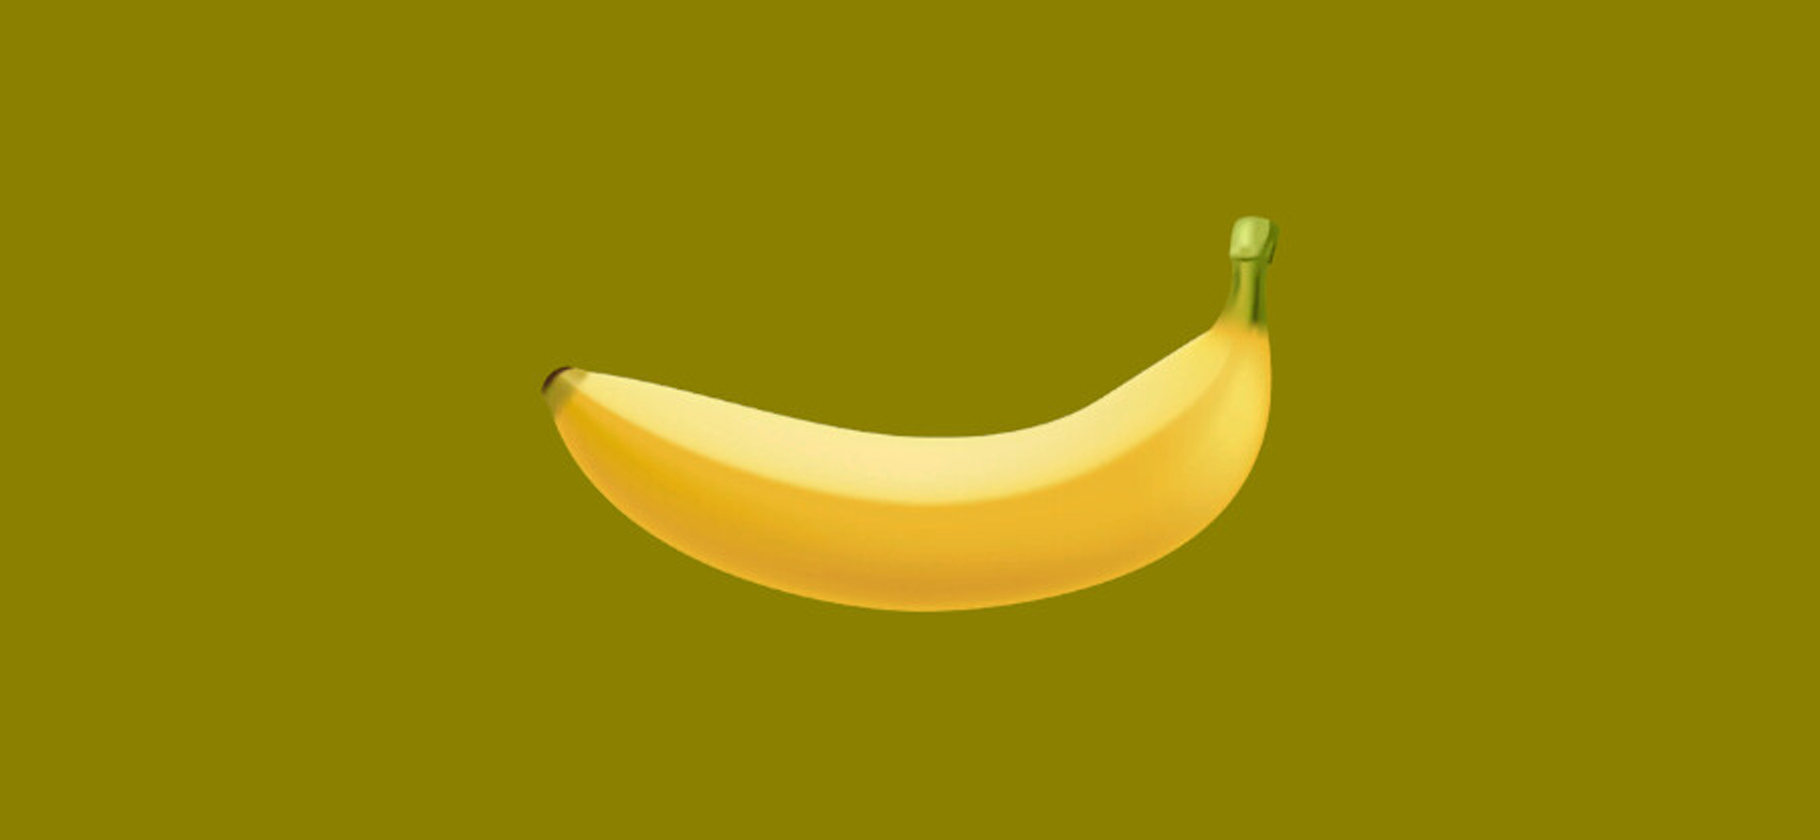 Кликер Banana с выводом денег стал одной из самых популярных игр Steam: что происходит